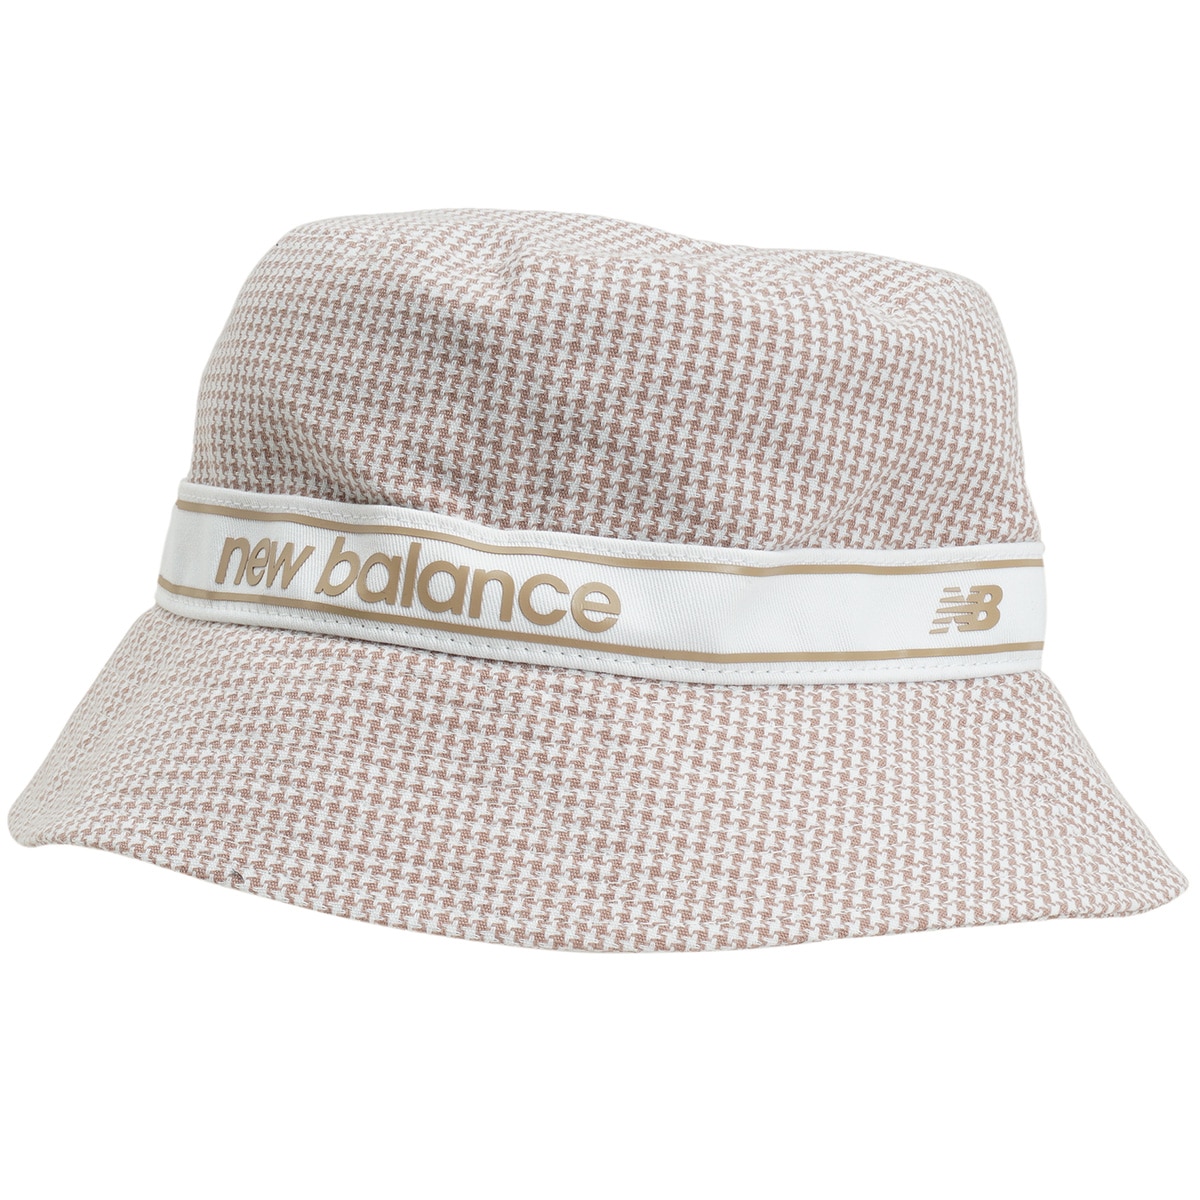 バケットハット レディス(【女性】その他帽子)|New Balance